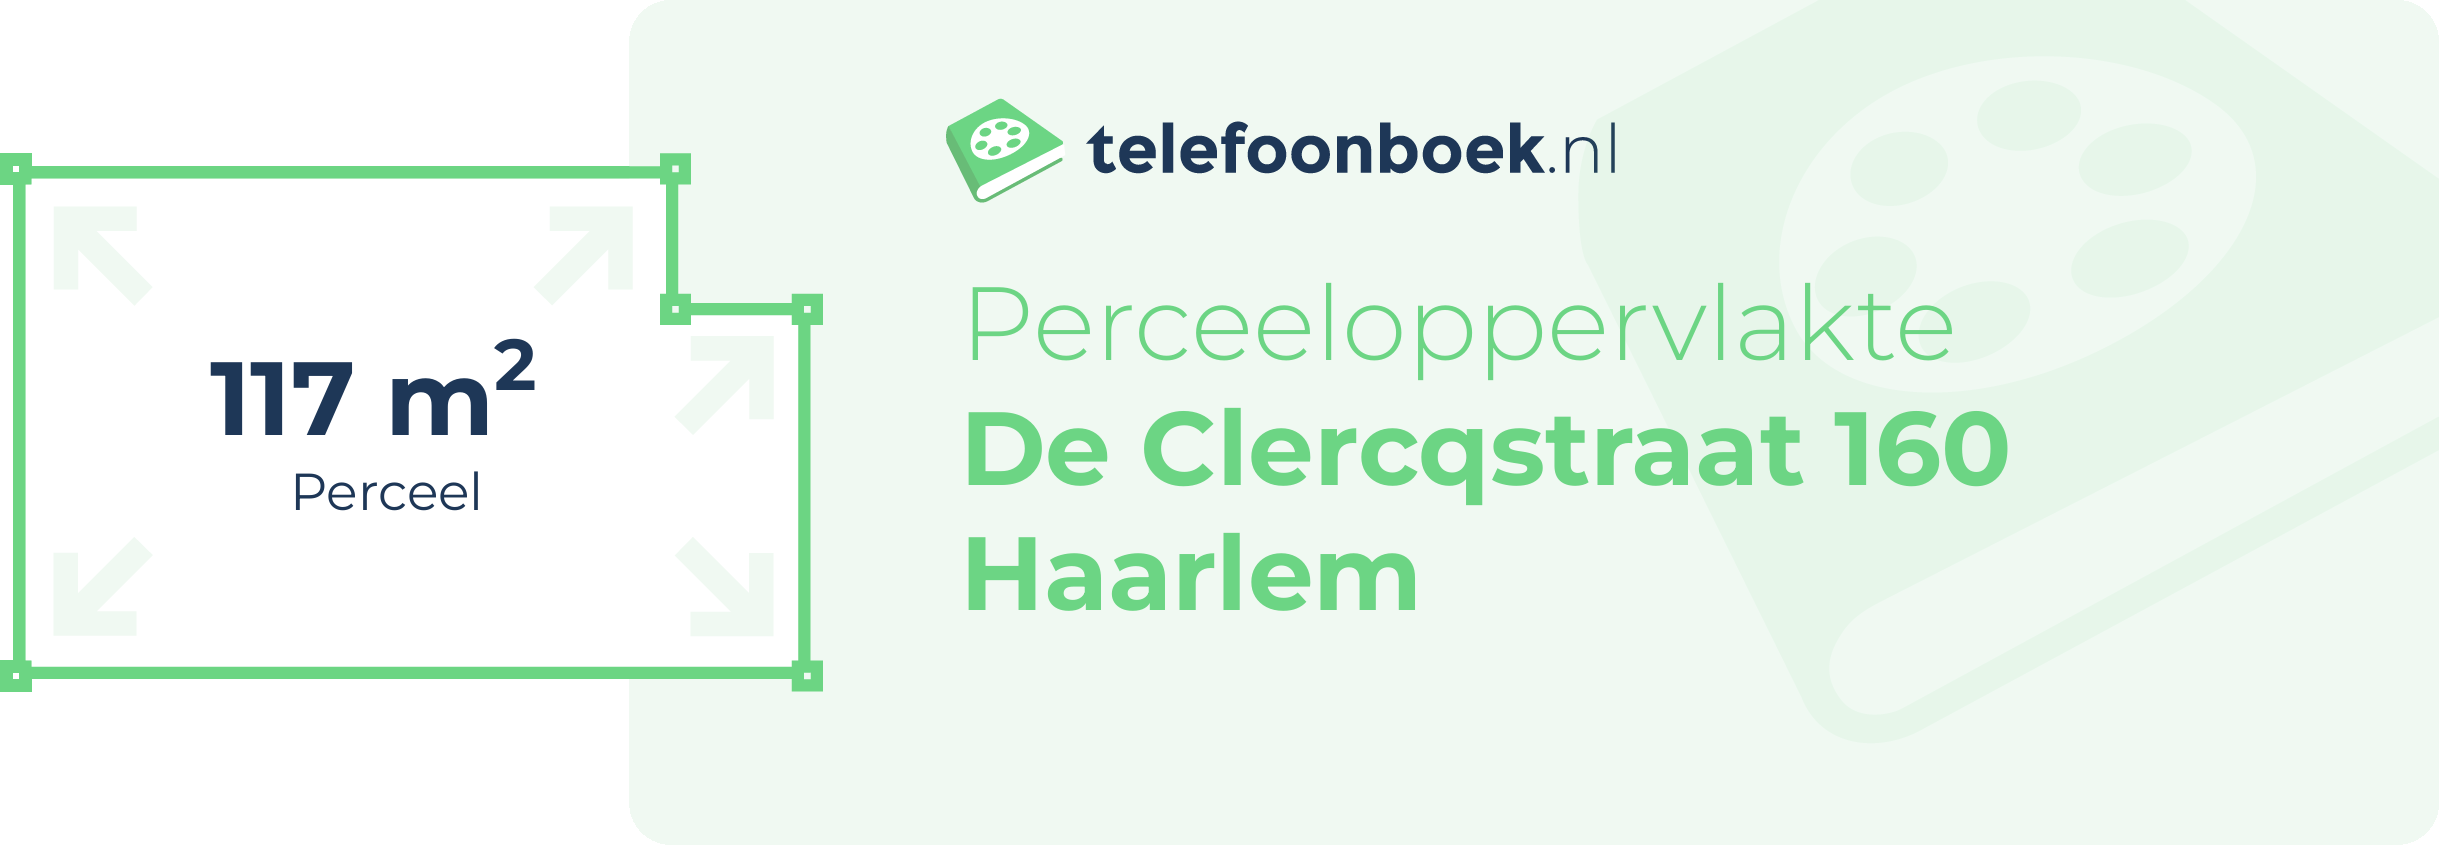 Perceeloppervlakte De Clercqstraat 160 Haarlem